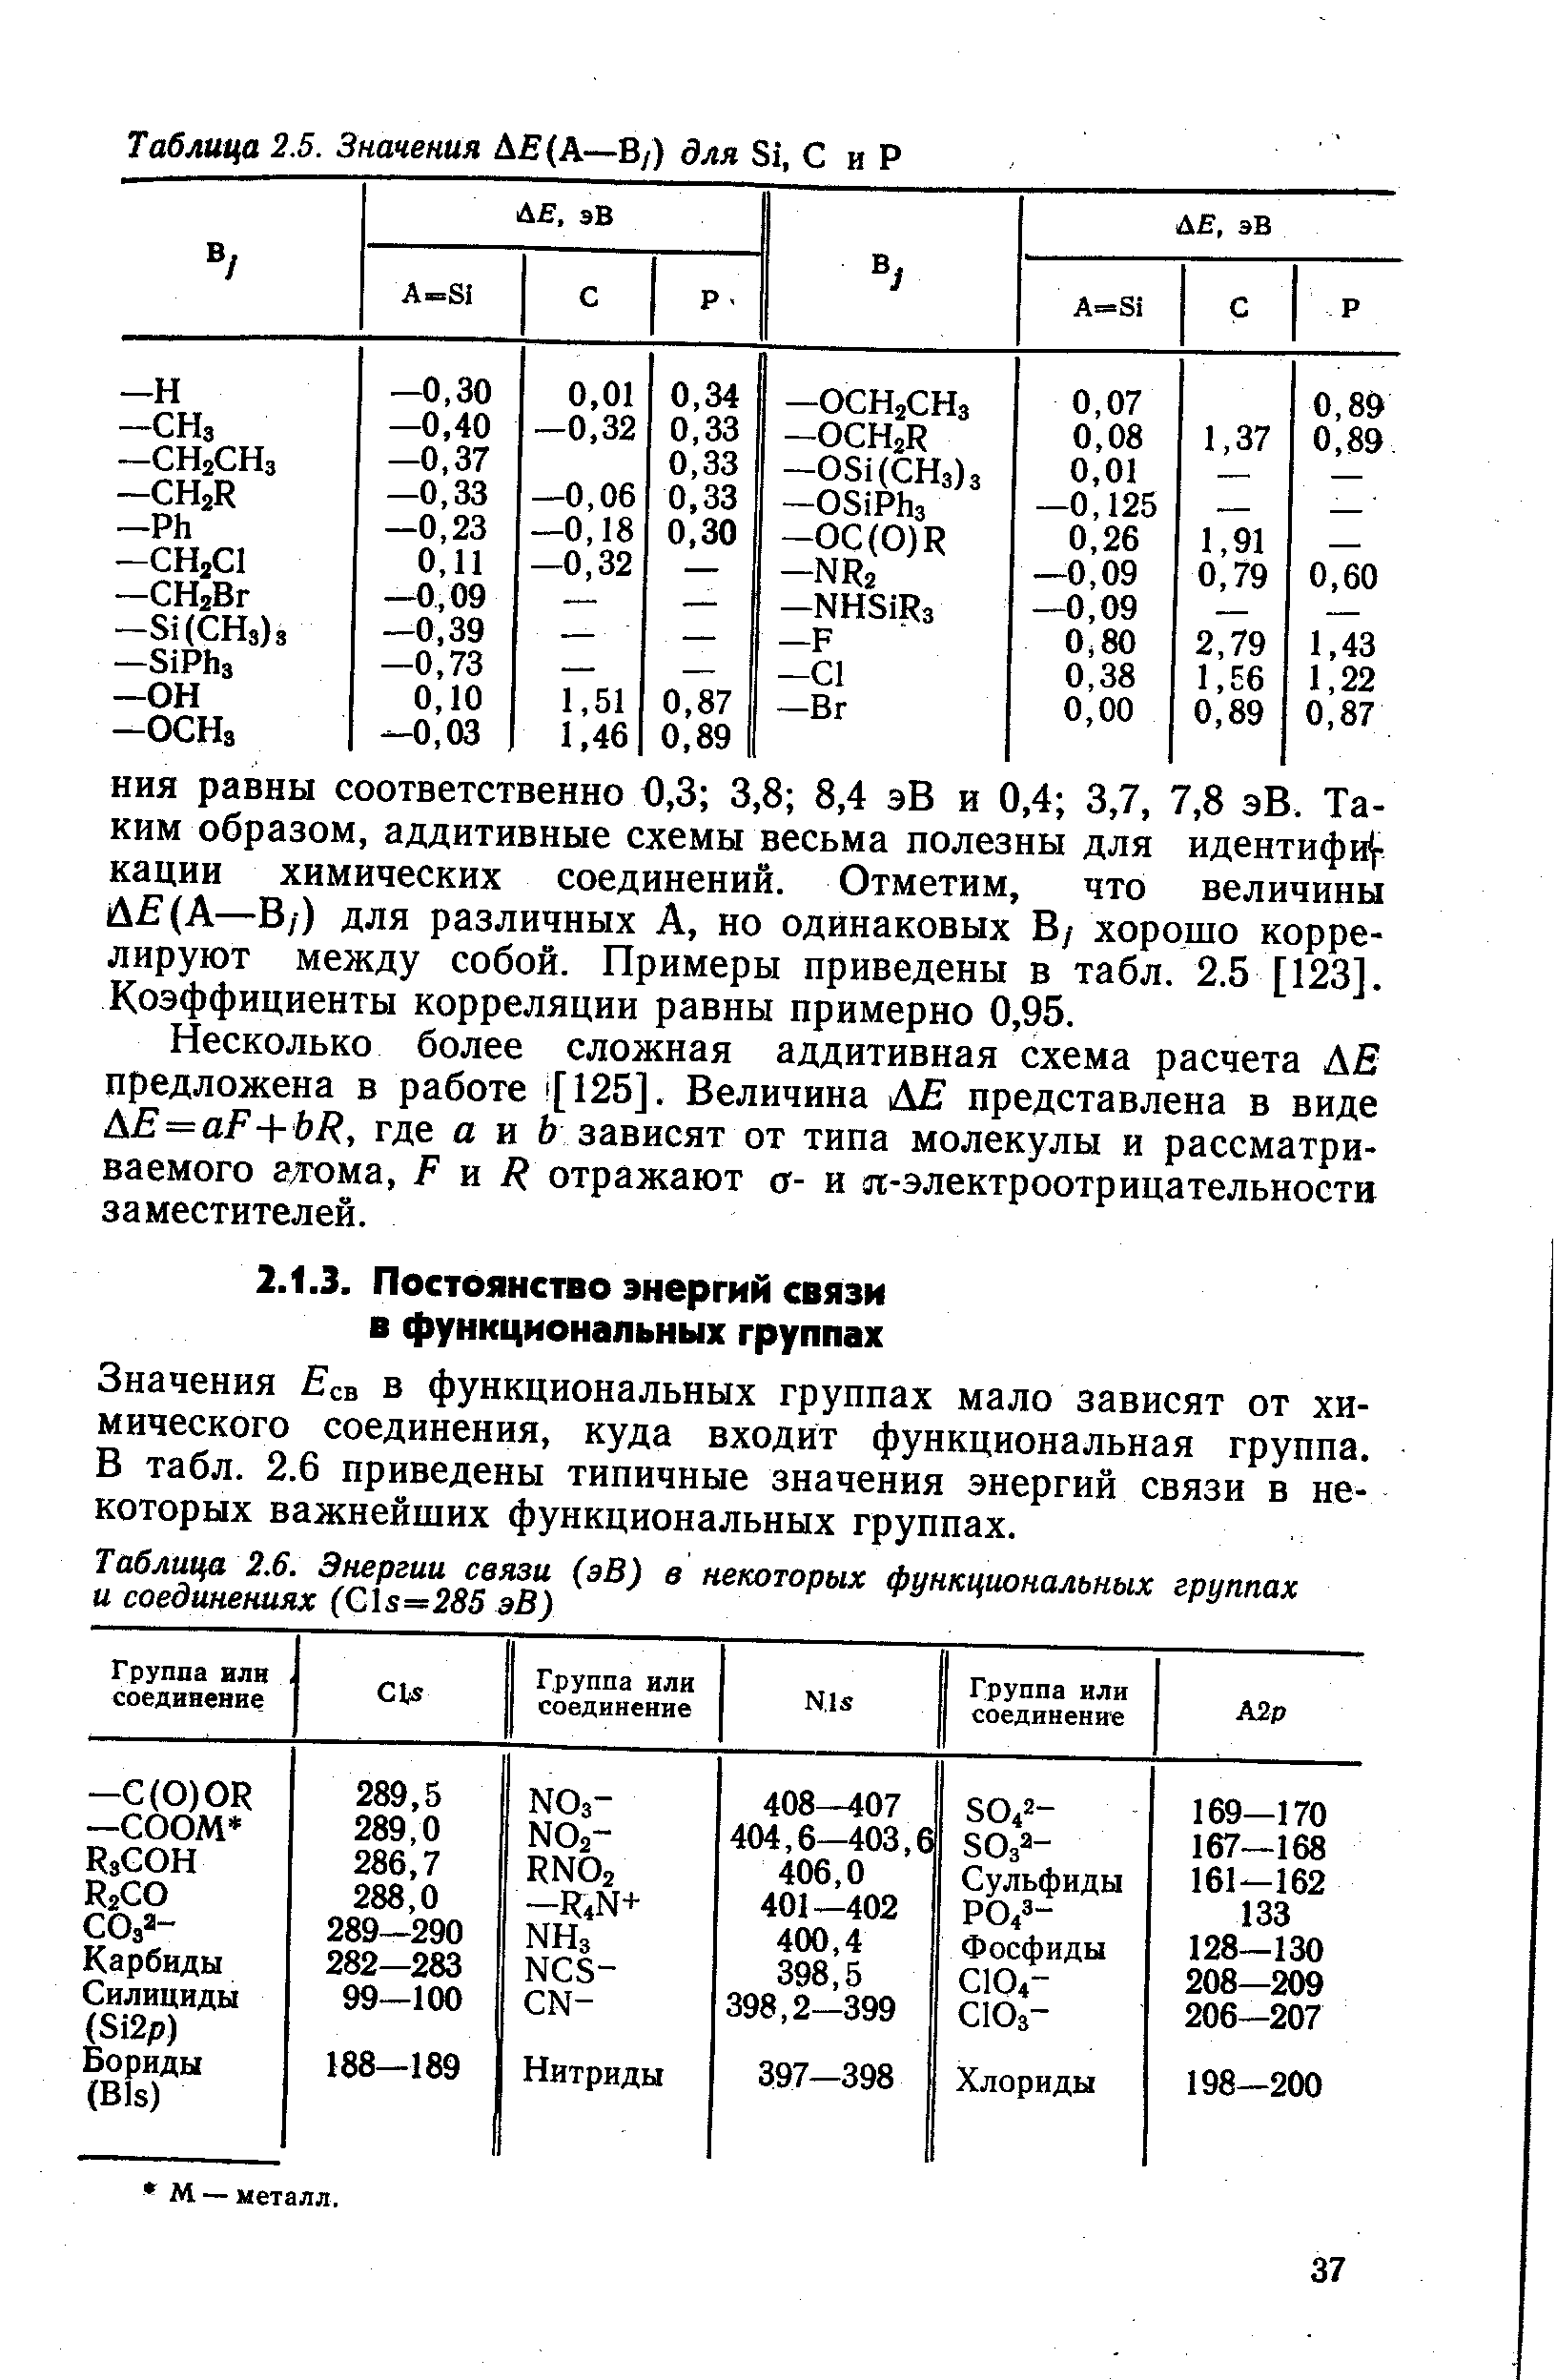 Значения Есв в функциональных группах мало зависят от химического соединения, куда входит функциональная группа. В табл. 2.6 приведены типичные значения энергий связи в некоторых важнейших функциональных группах.